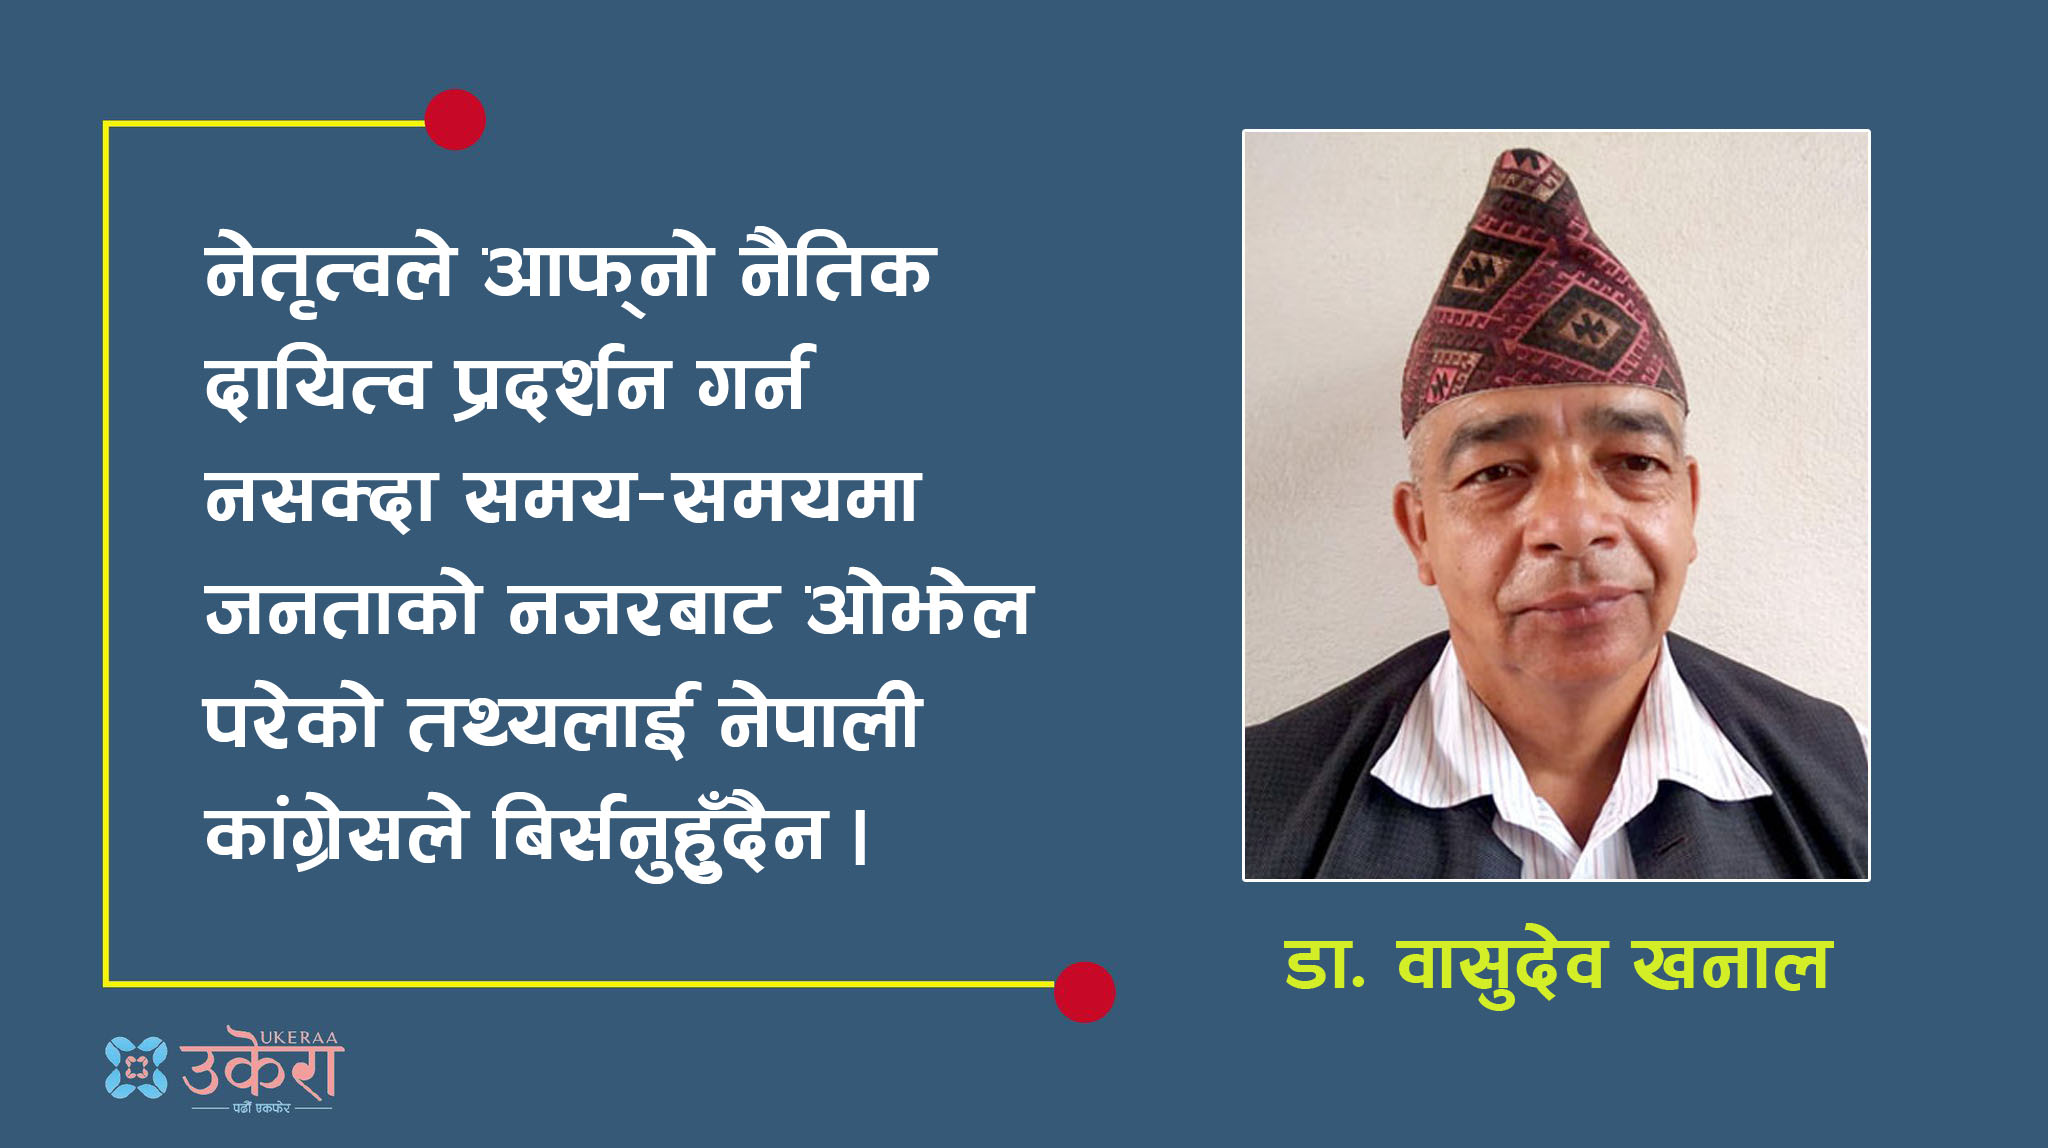 नेपाली कांग्रेस, आसन्न निर्वाचन र गठबन्धनको चर्चा